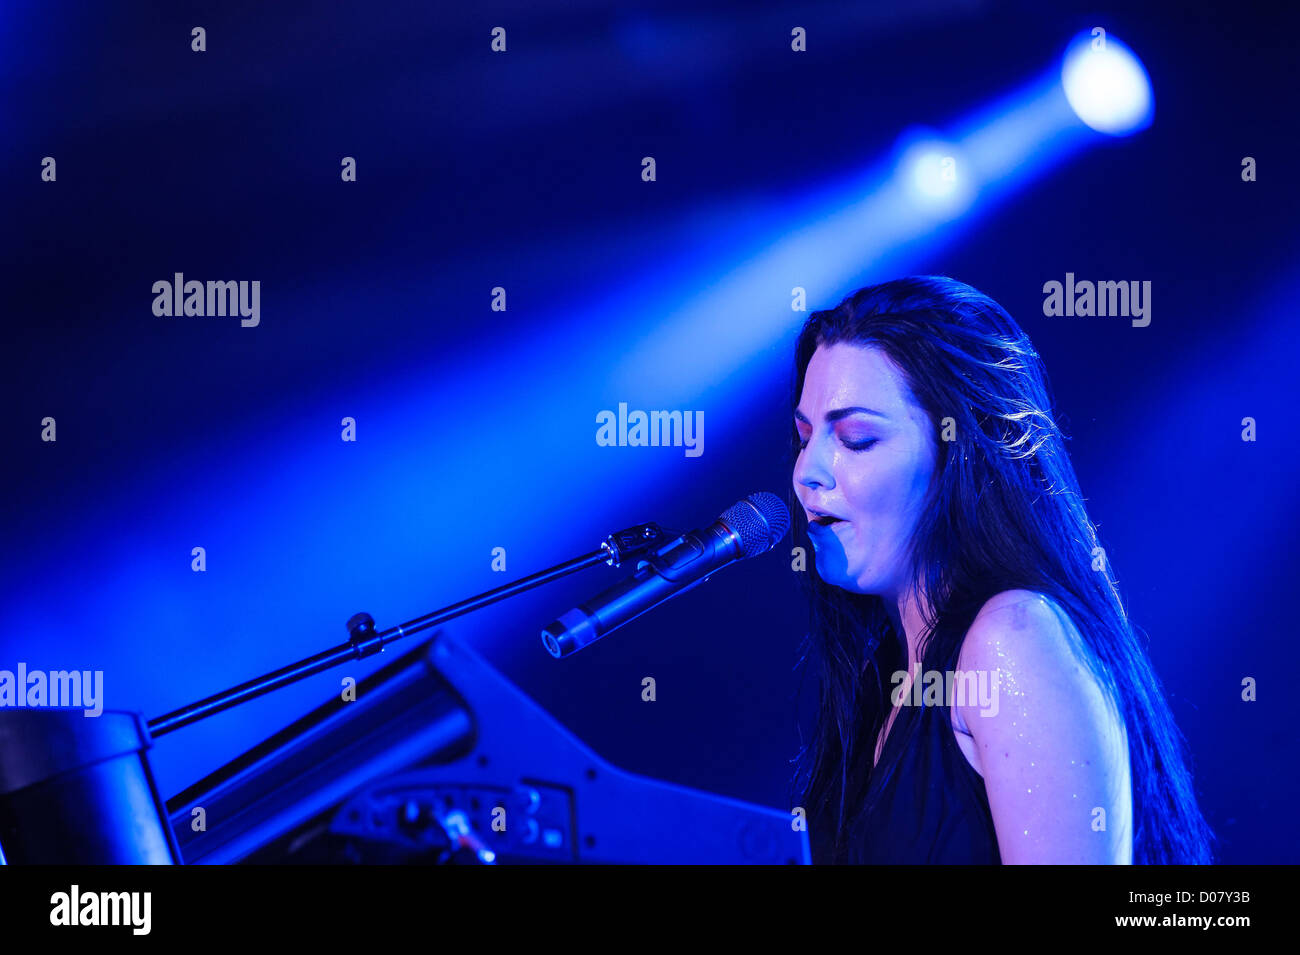 Vincitore del premio Grammy rock band Evanescence gioca Wembley Arena il 09/11/2012 a Wembley Arena, Londra. Persone nella foto: Amy Lee. Foto di Julie Edwards Foto Stock